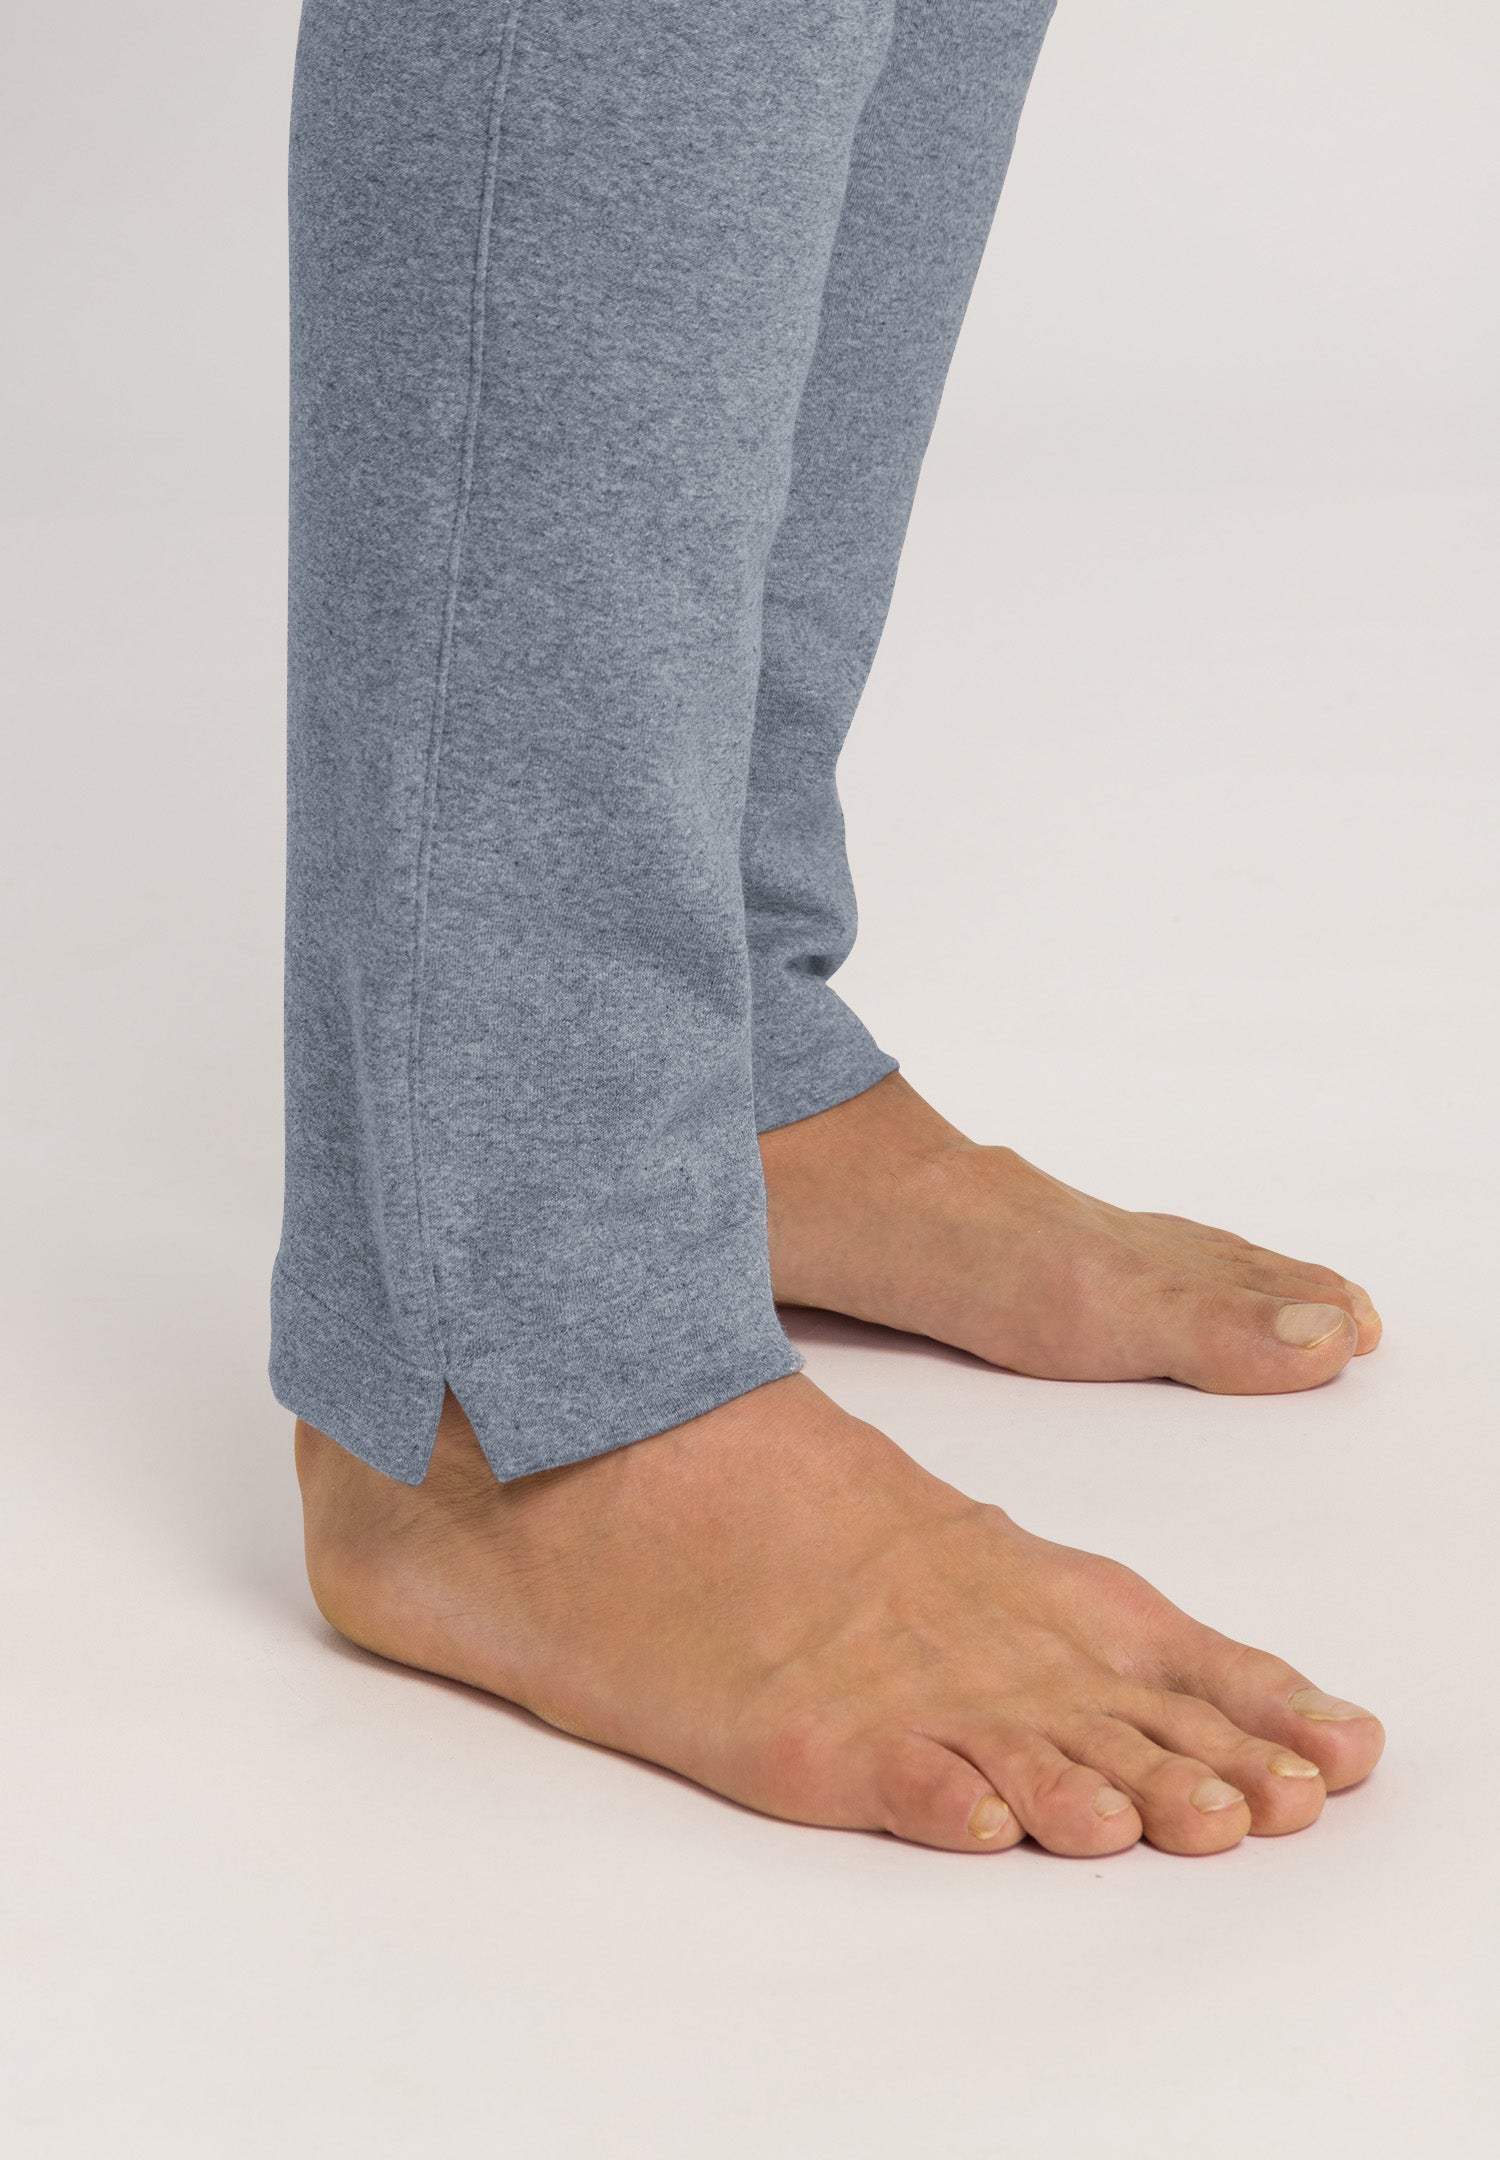 75914 Smartwear Pants - 2362 Cliff Melange